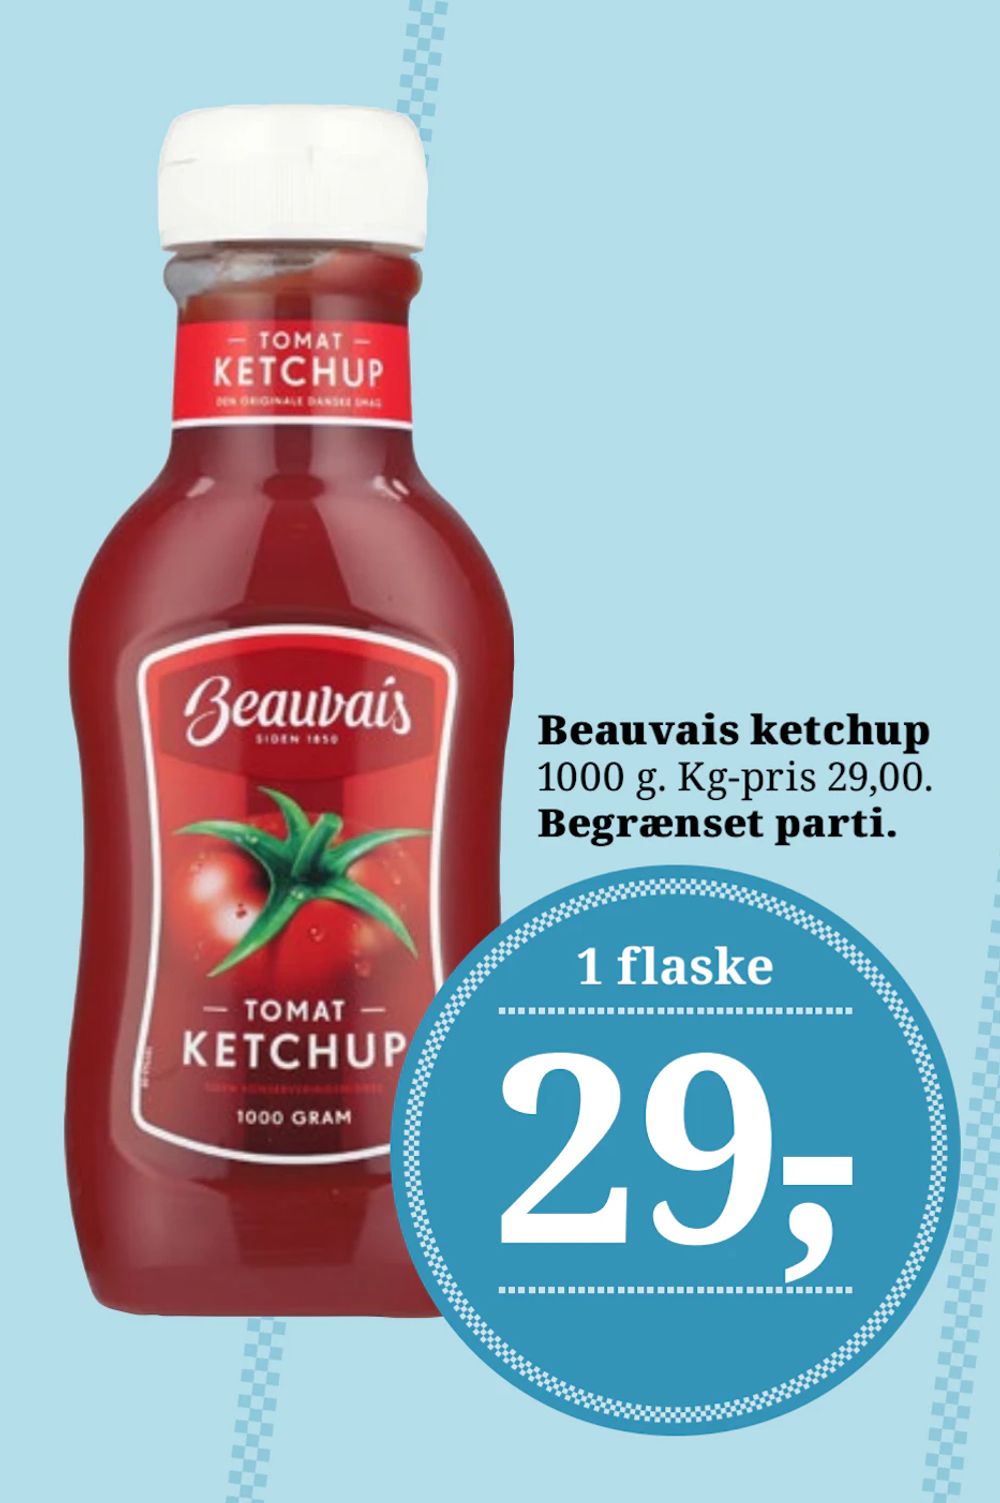 Tilbud på Beauvais ketchup fra Brugsen til 29 kr.